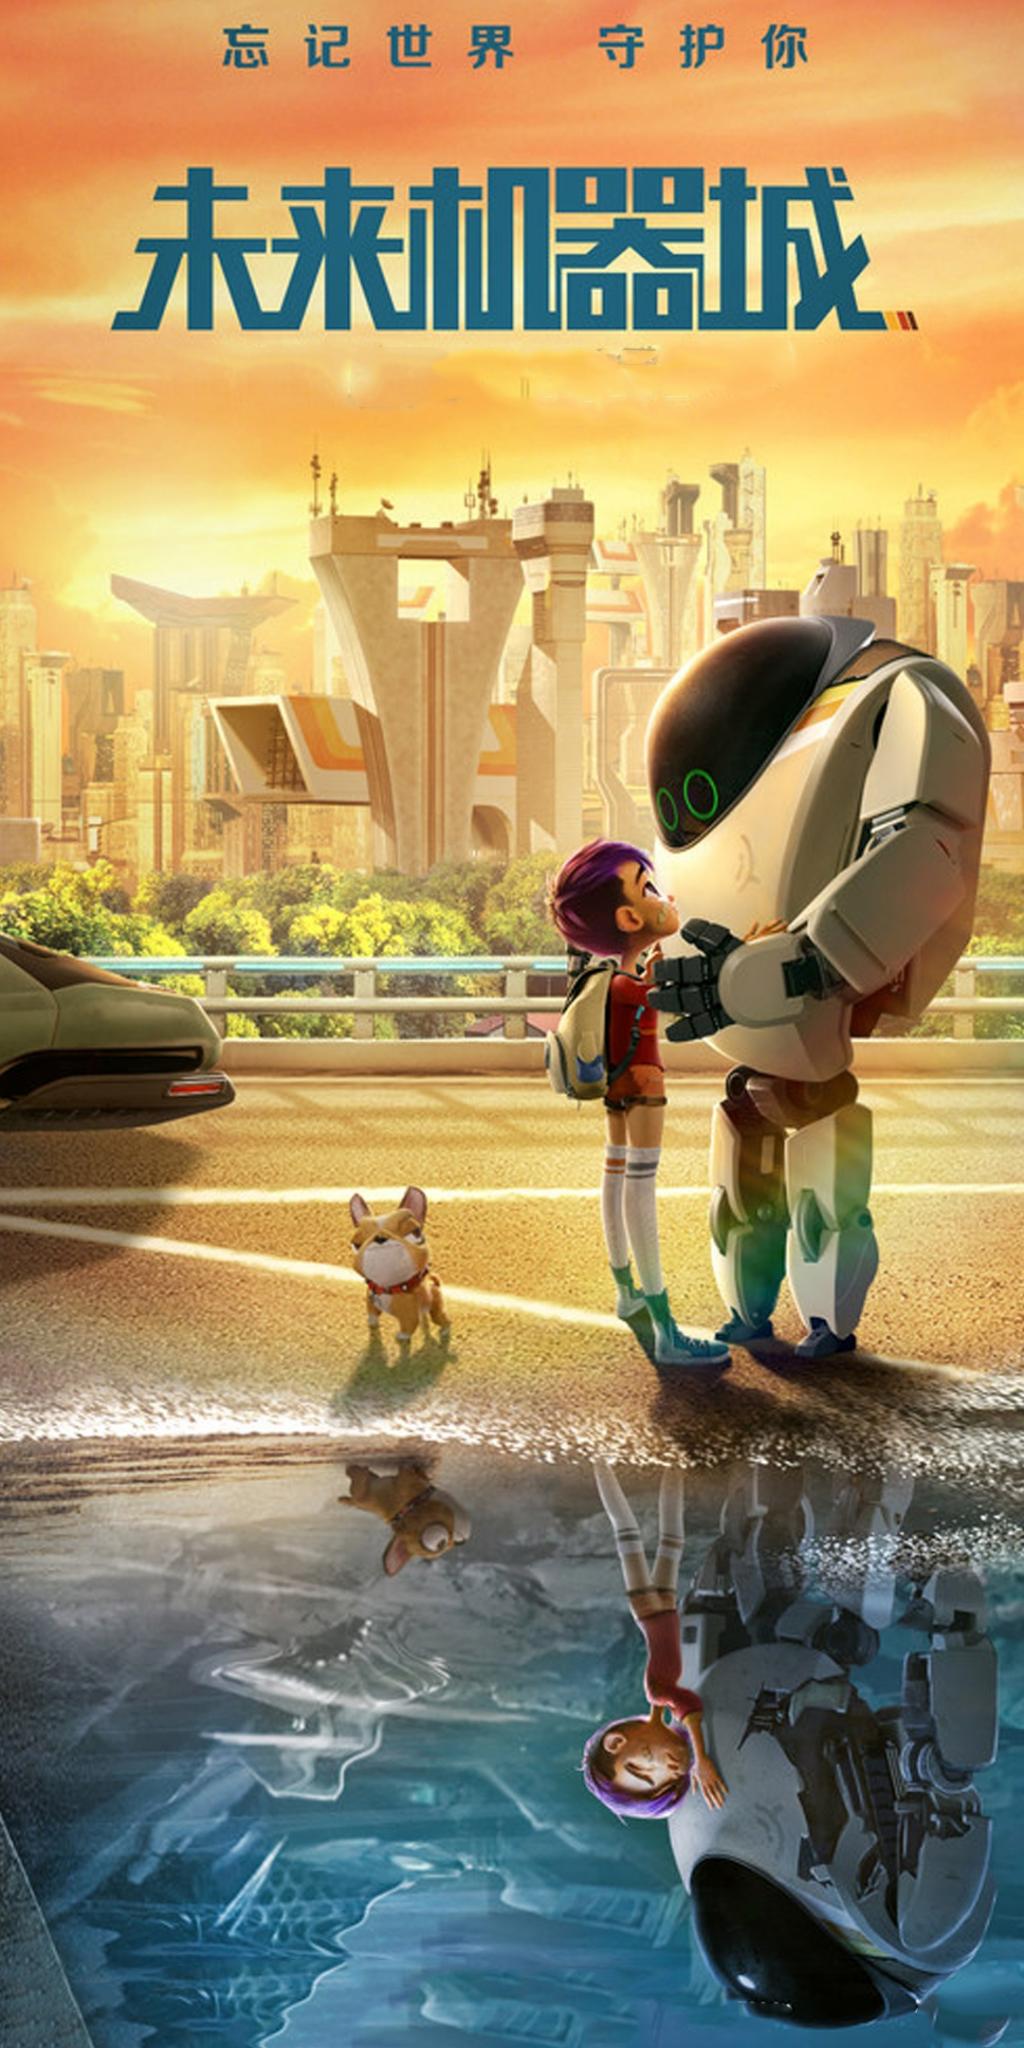 科幻冒险动画电影《未来机器城 (2018)》剧照封面